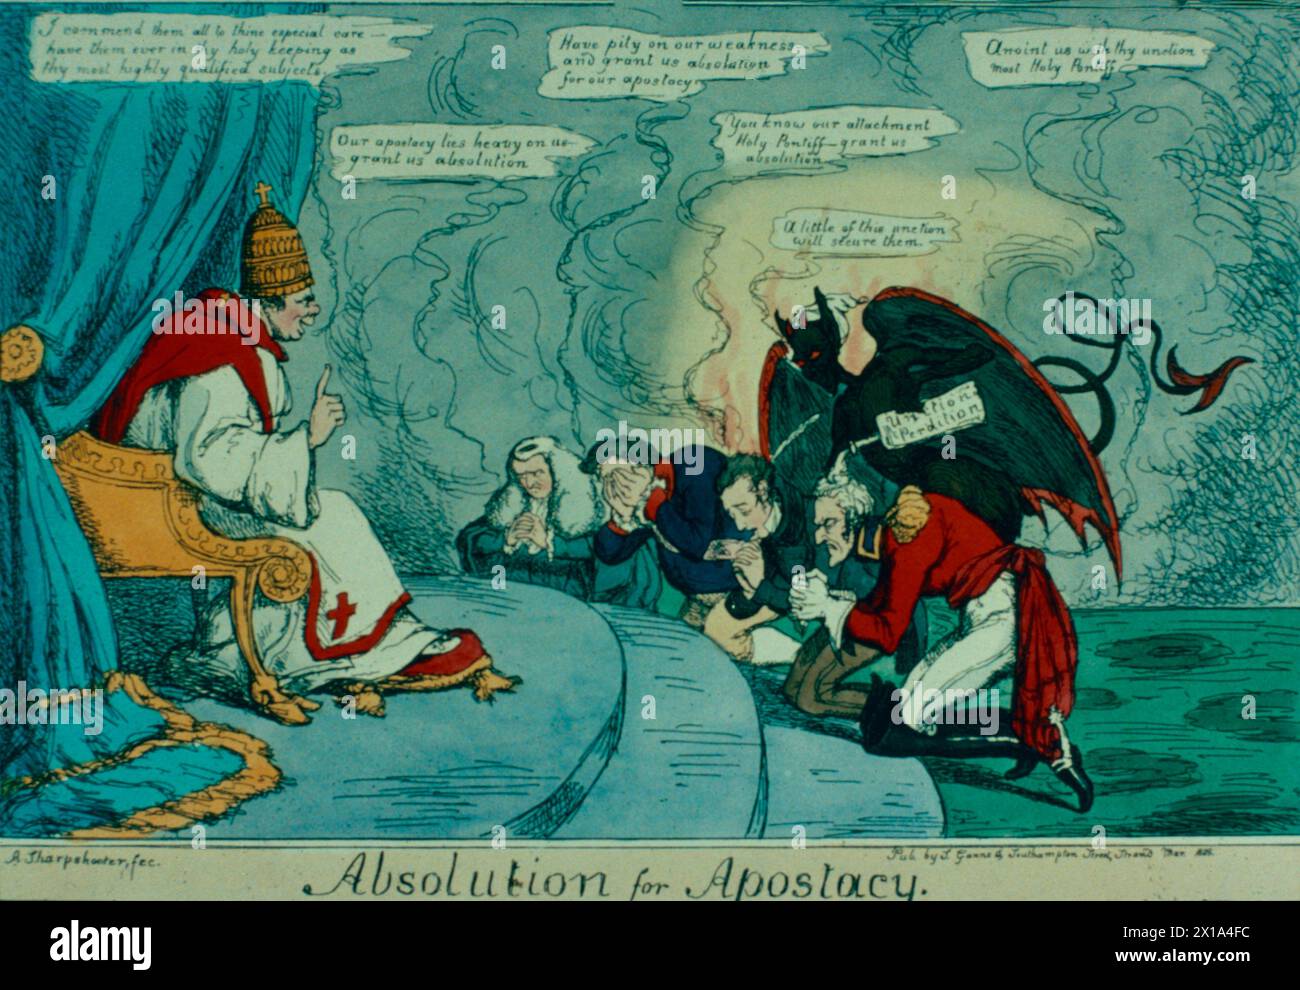 Absolutism for Apostasy, caricature britannique sur le projet de loi d'émancipation catholique, illustration 1829 Banque D'Images